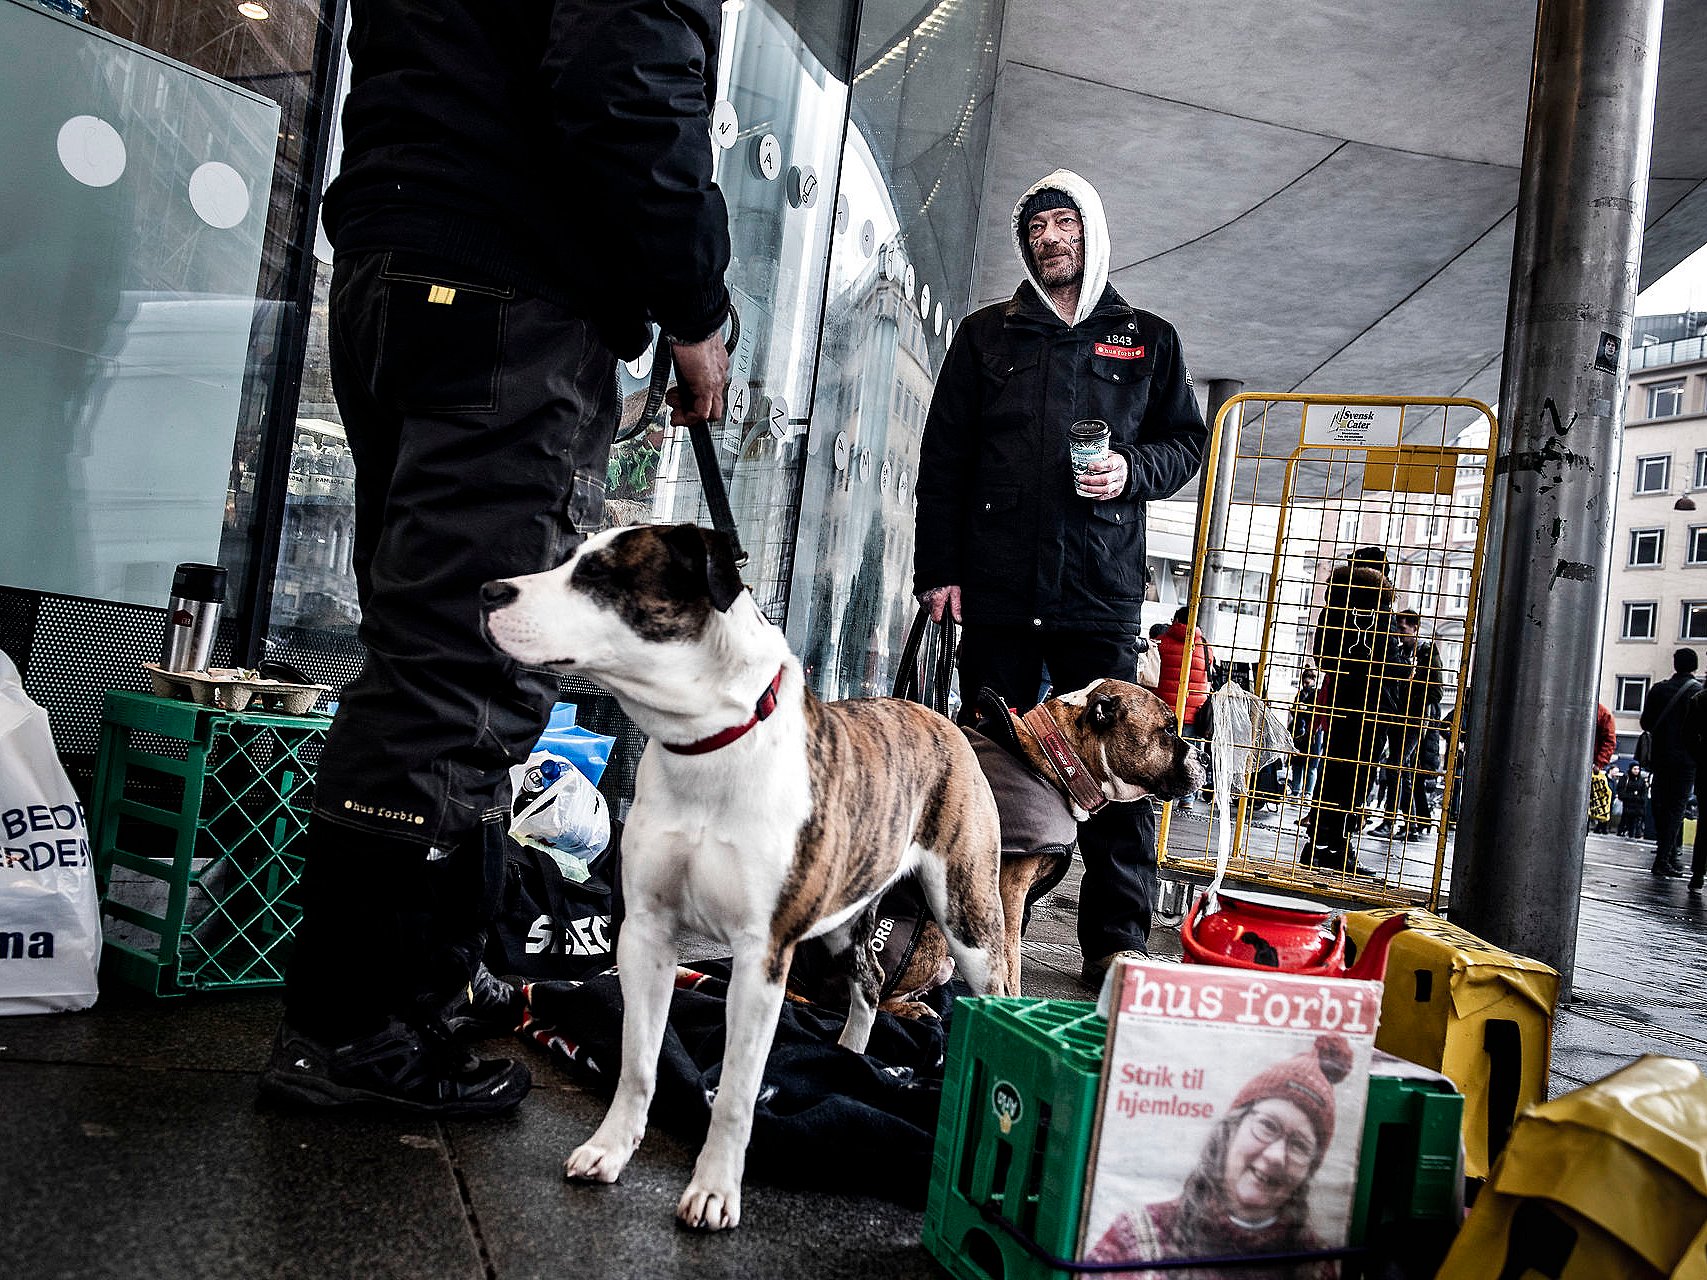 at styre Tolk hav det sjovt Københavns Kommune bruger en halv million kroner på hjemløse hunde | TV 2  Kosmopol